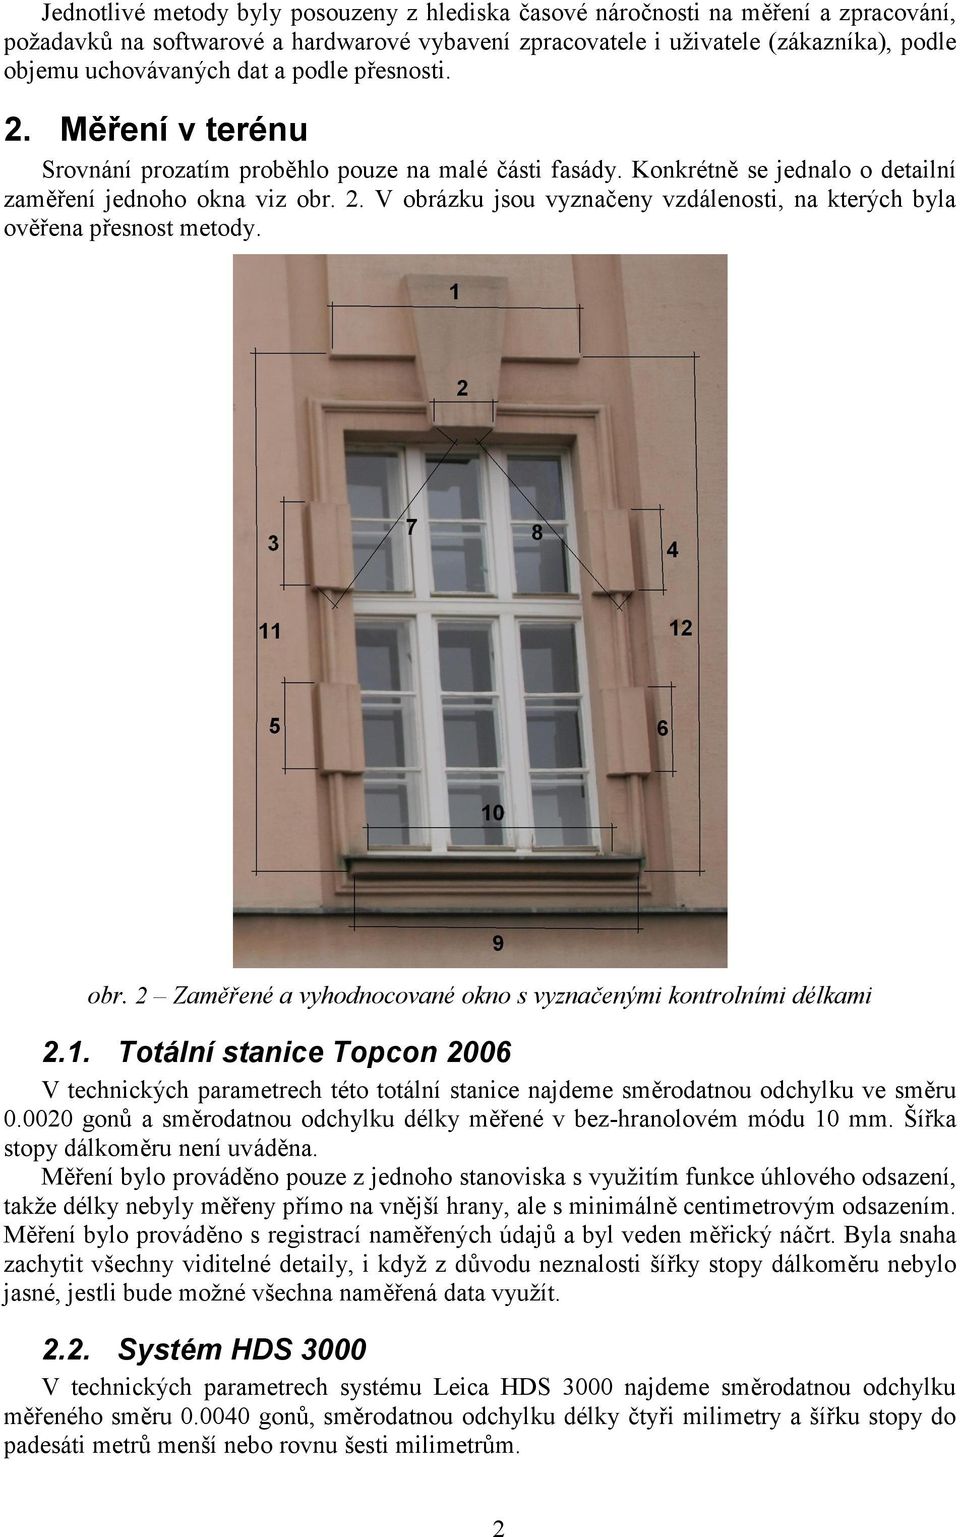 obr. 2 Zaměřené a vyhodnocované okno s vyznačenými kontrolními délkami 2.1. Totální stanice Topcon 2006 V technických parametrech této totální stanice najdeme směrodatnou odchylku ve směru 0.